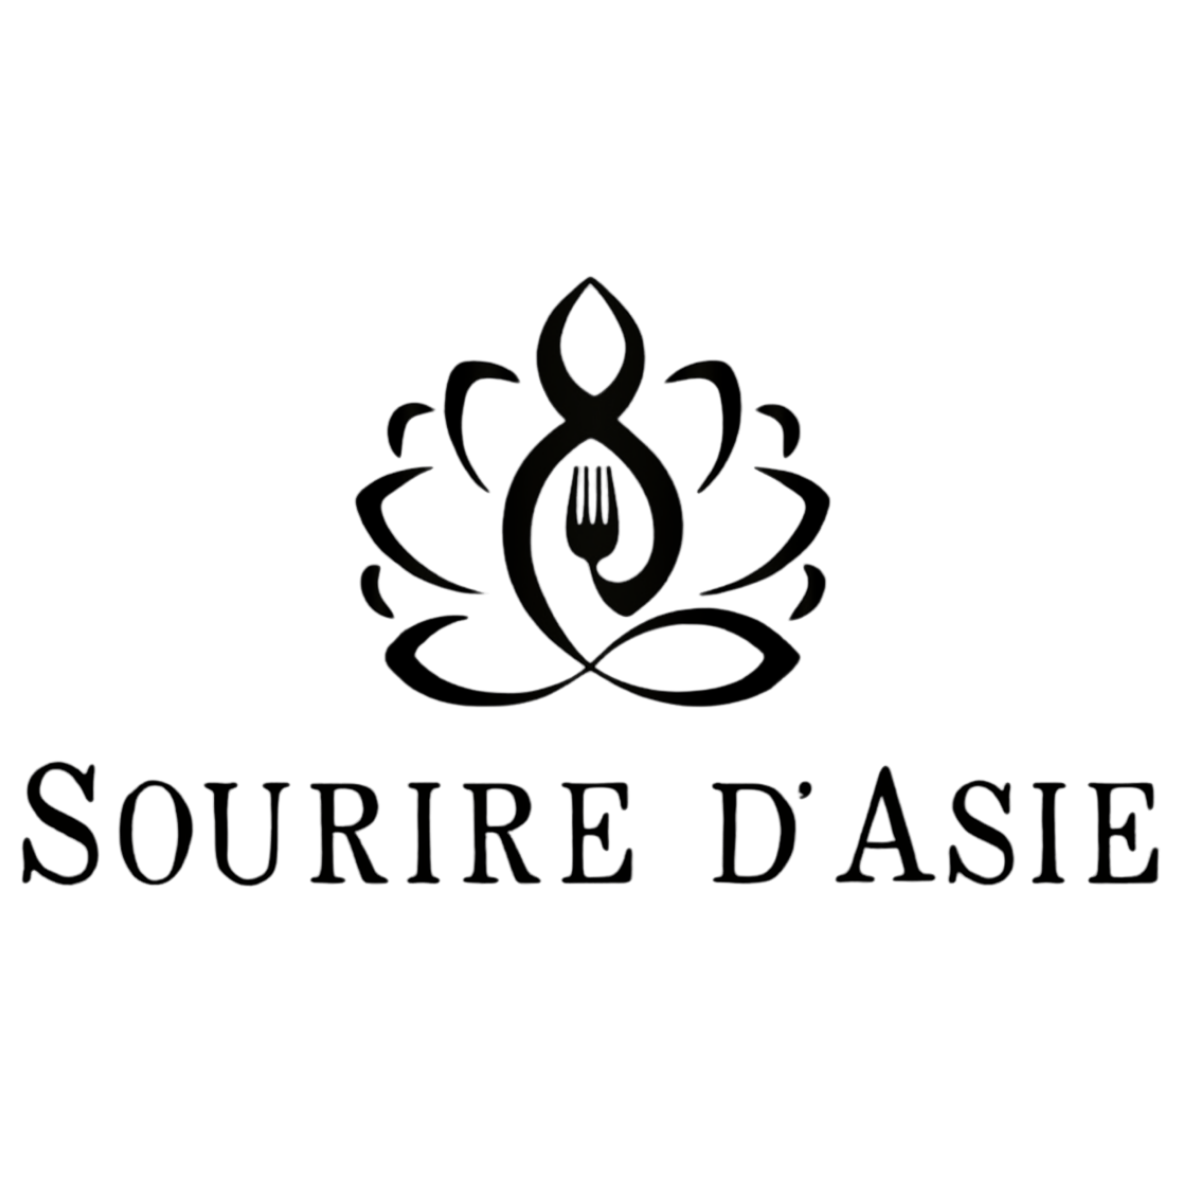 Logo client Sourire d'Asie